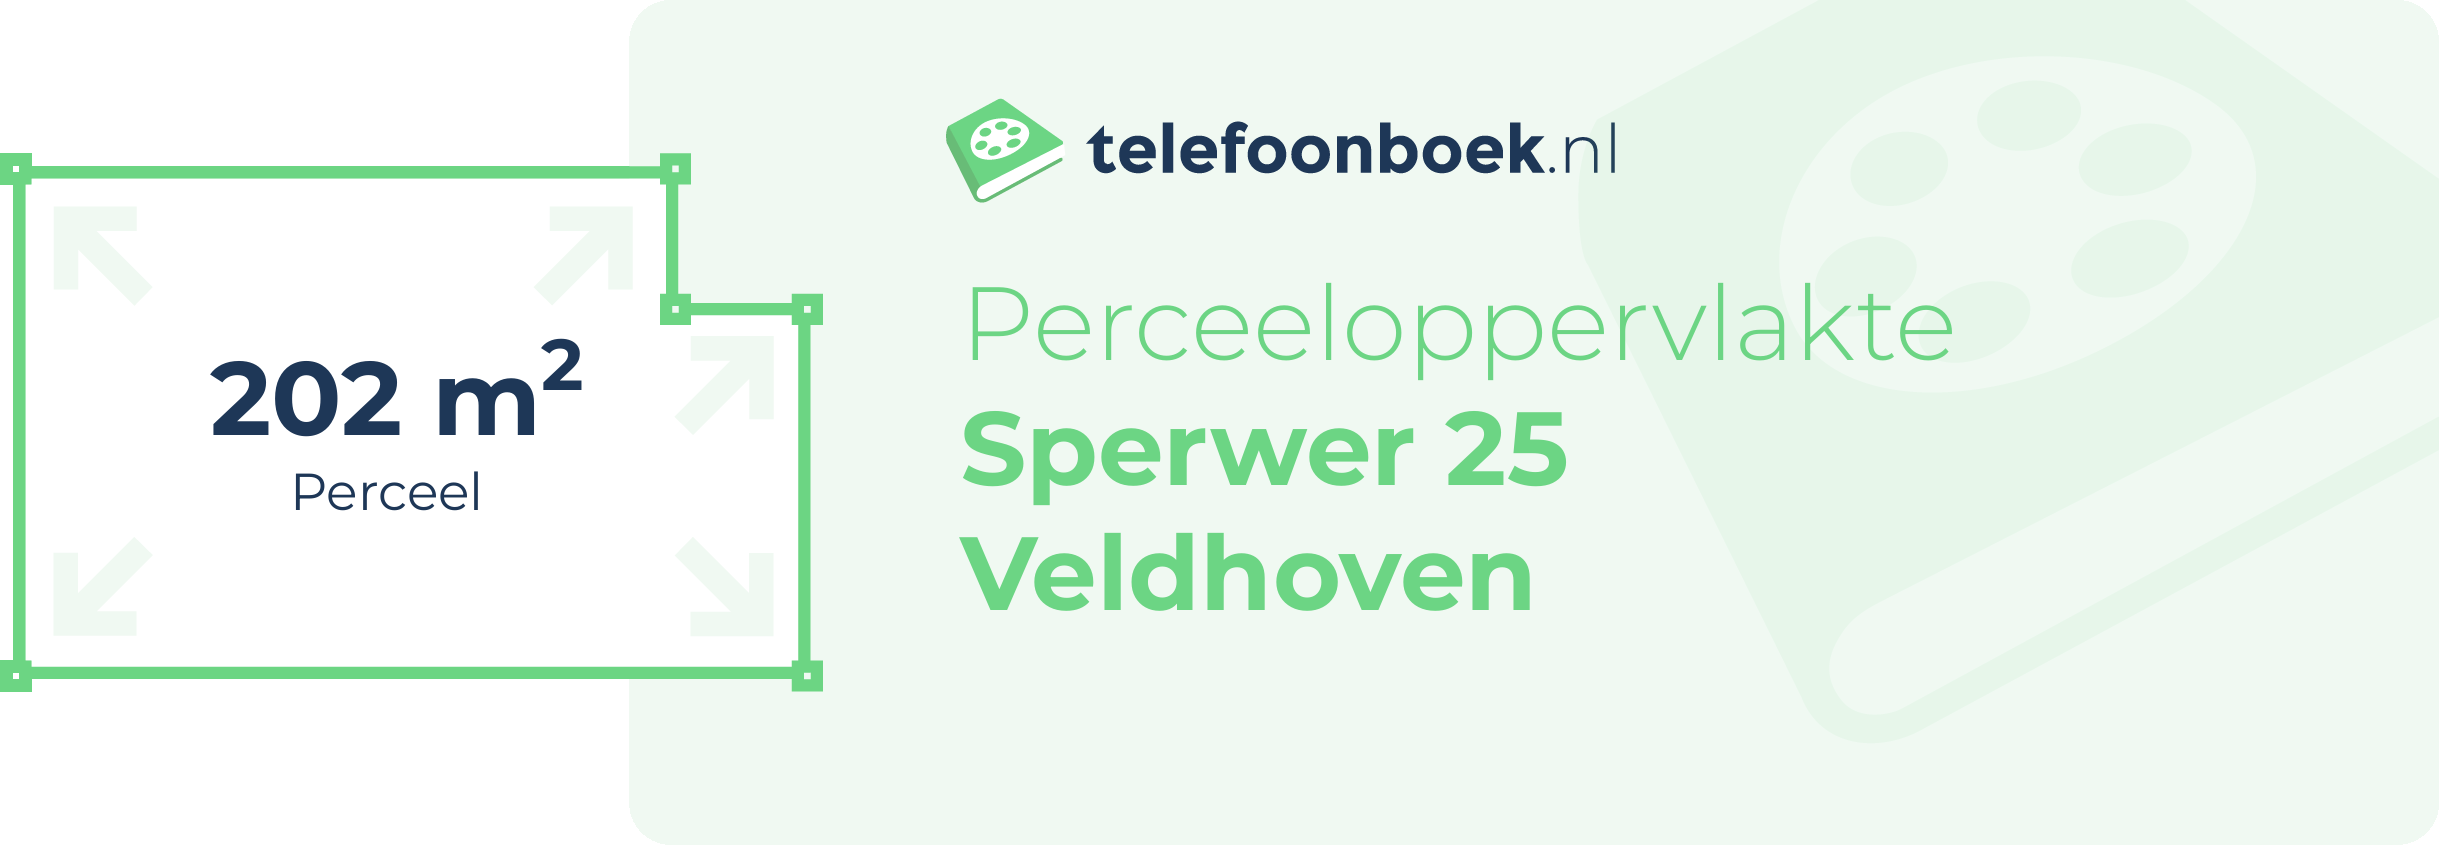 Perceeloppervlakte Sperwer 25 Veldhoven